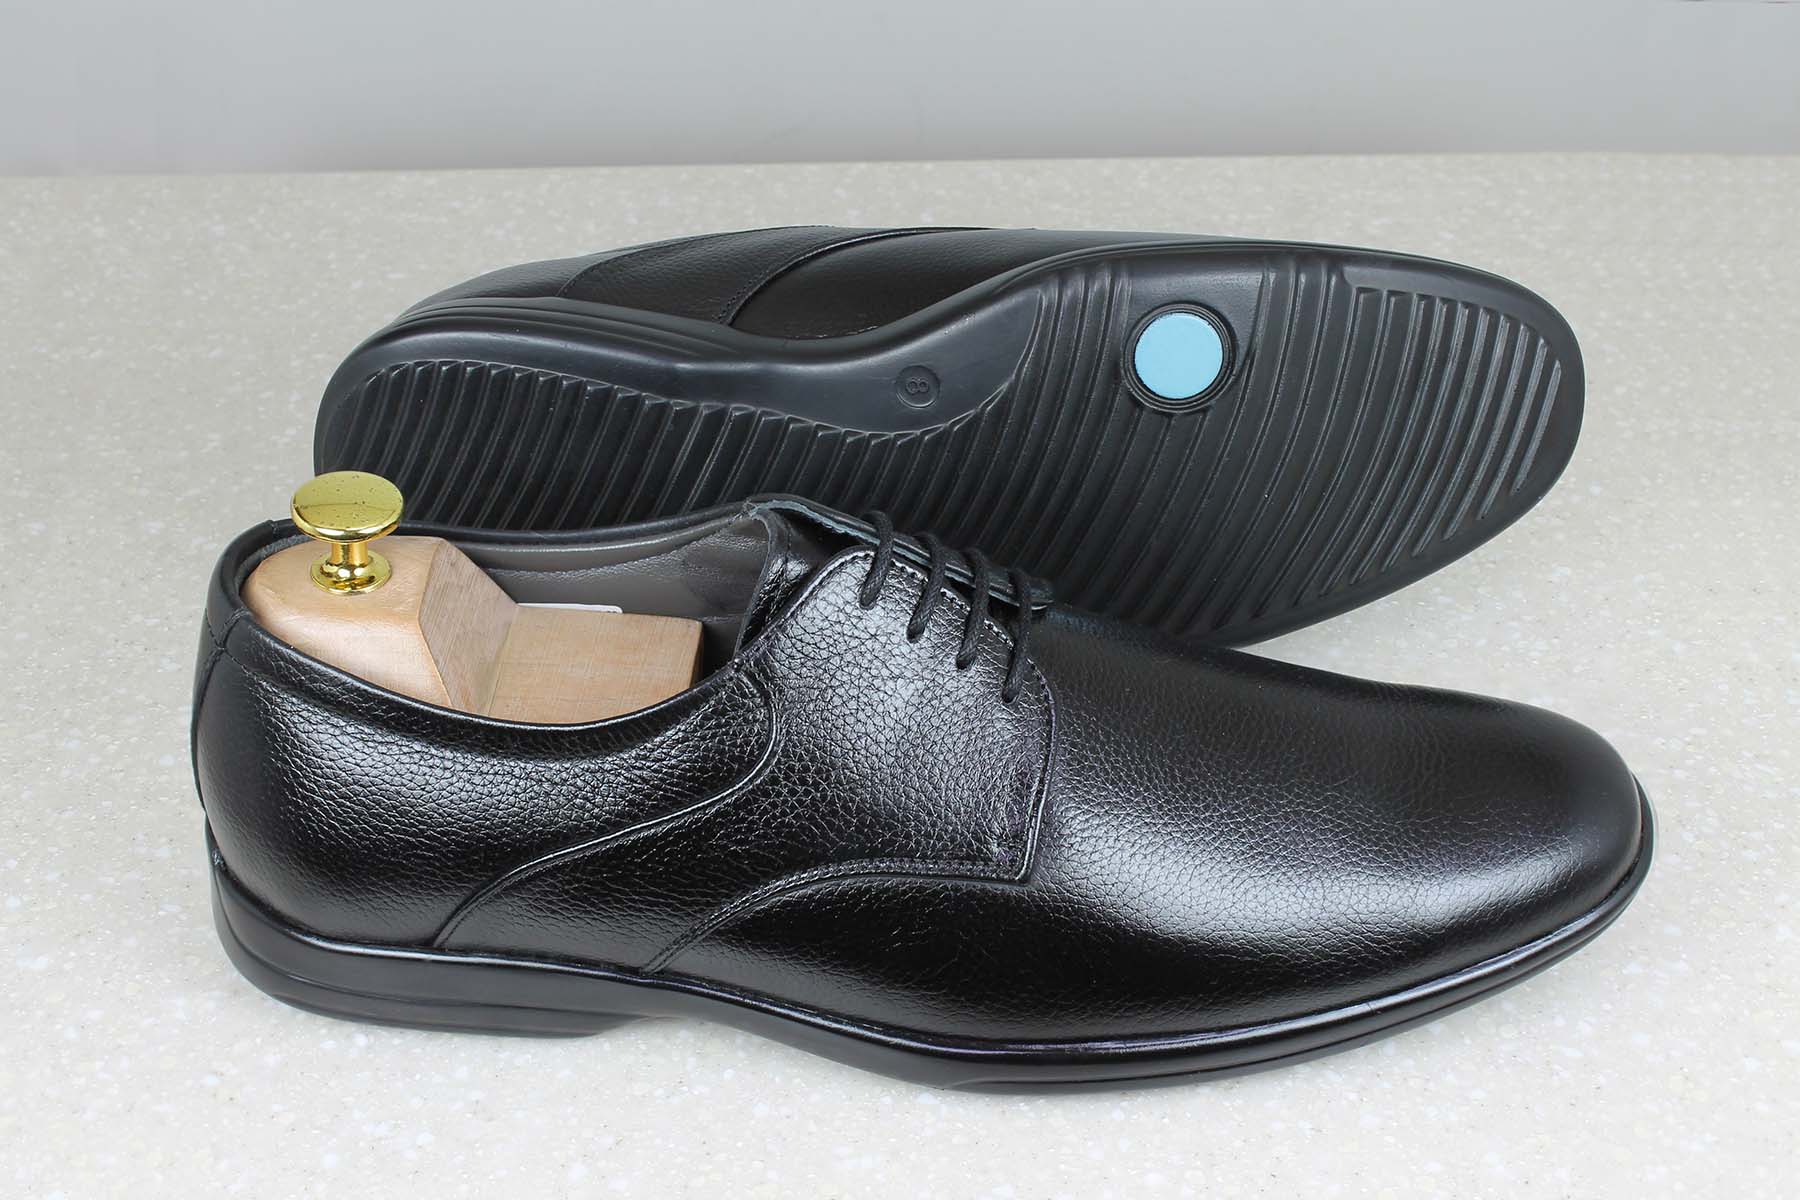 OFFICE LACE UP-BLACK-Men's Formal Shoe-Inc5 Shoes